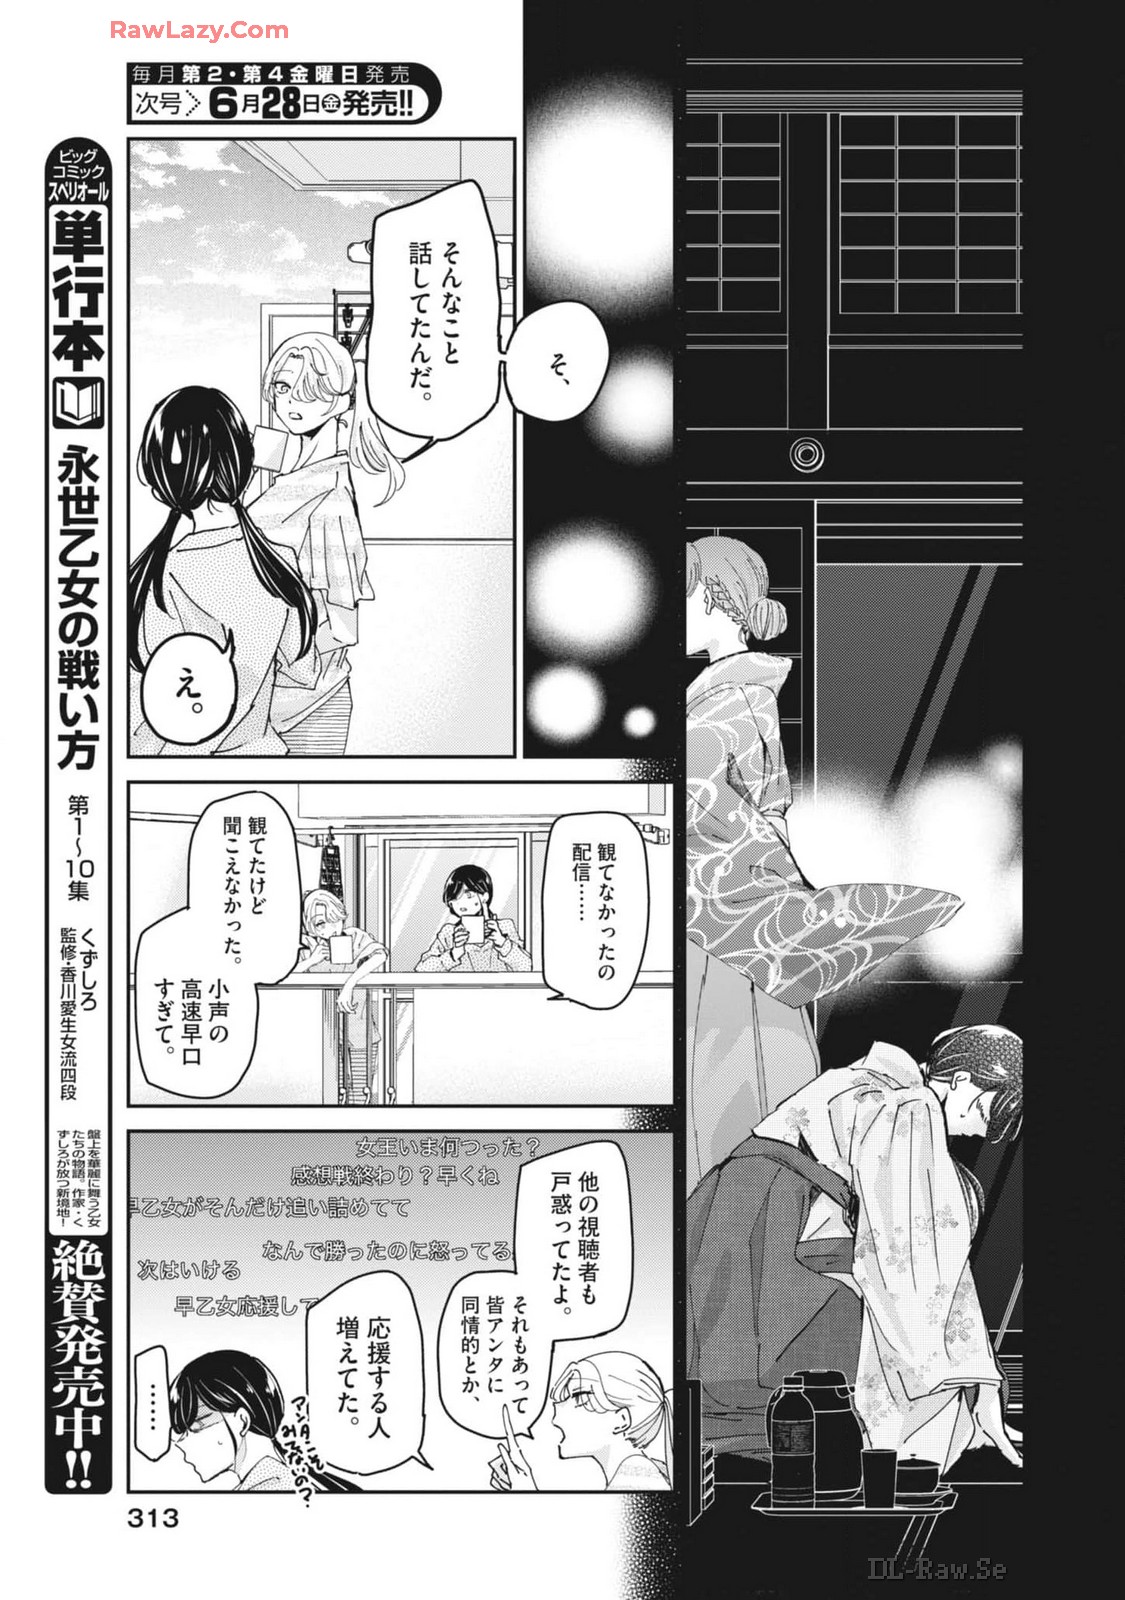 Eisei Otome no Tatakai-kata - Chapter 97 - Page 11